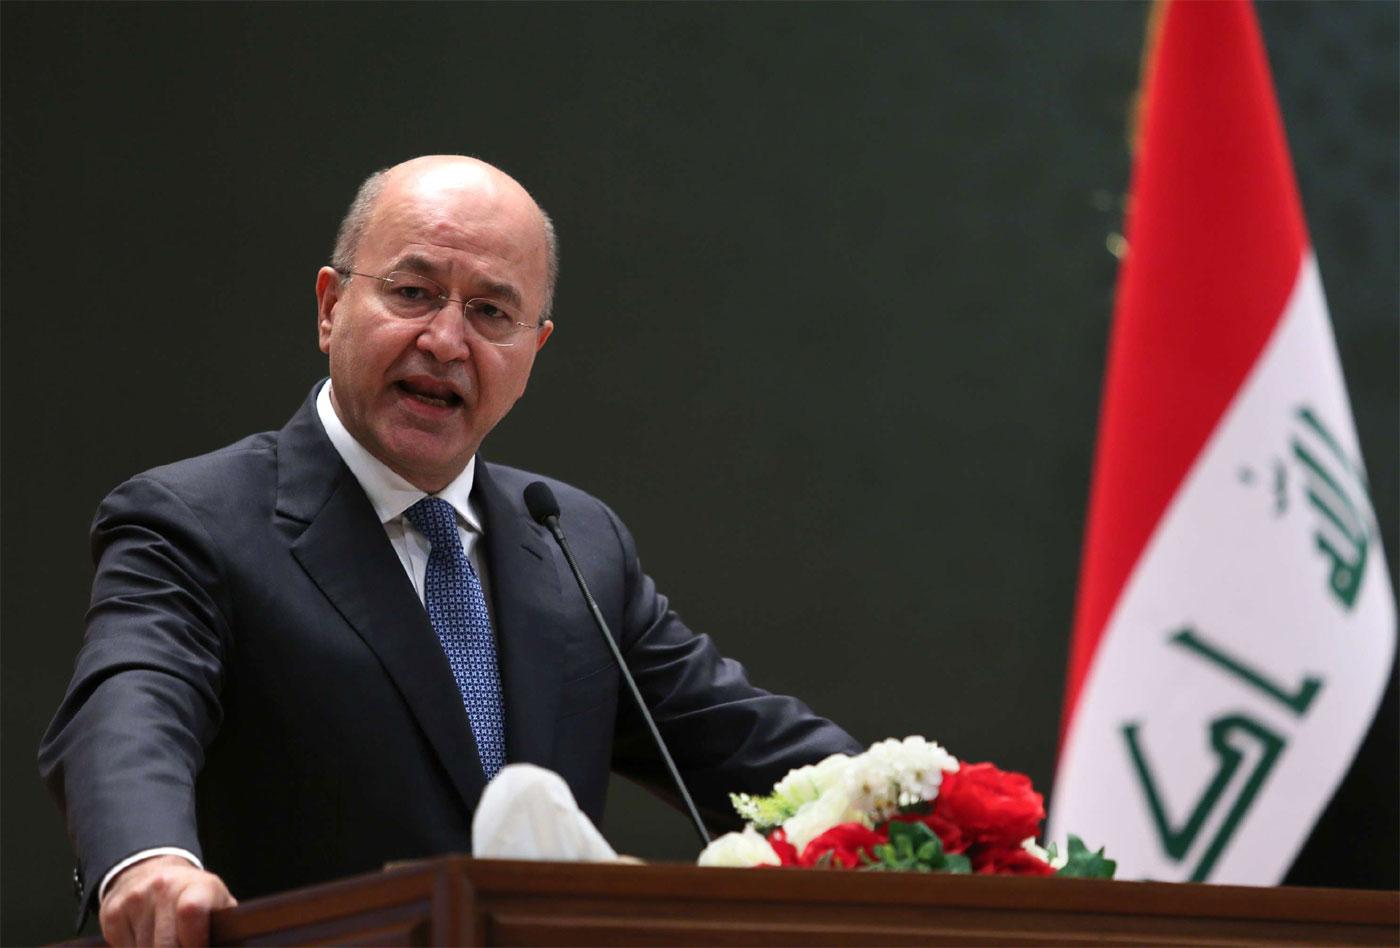 President iraq Iraq fails